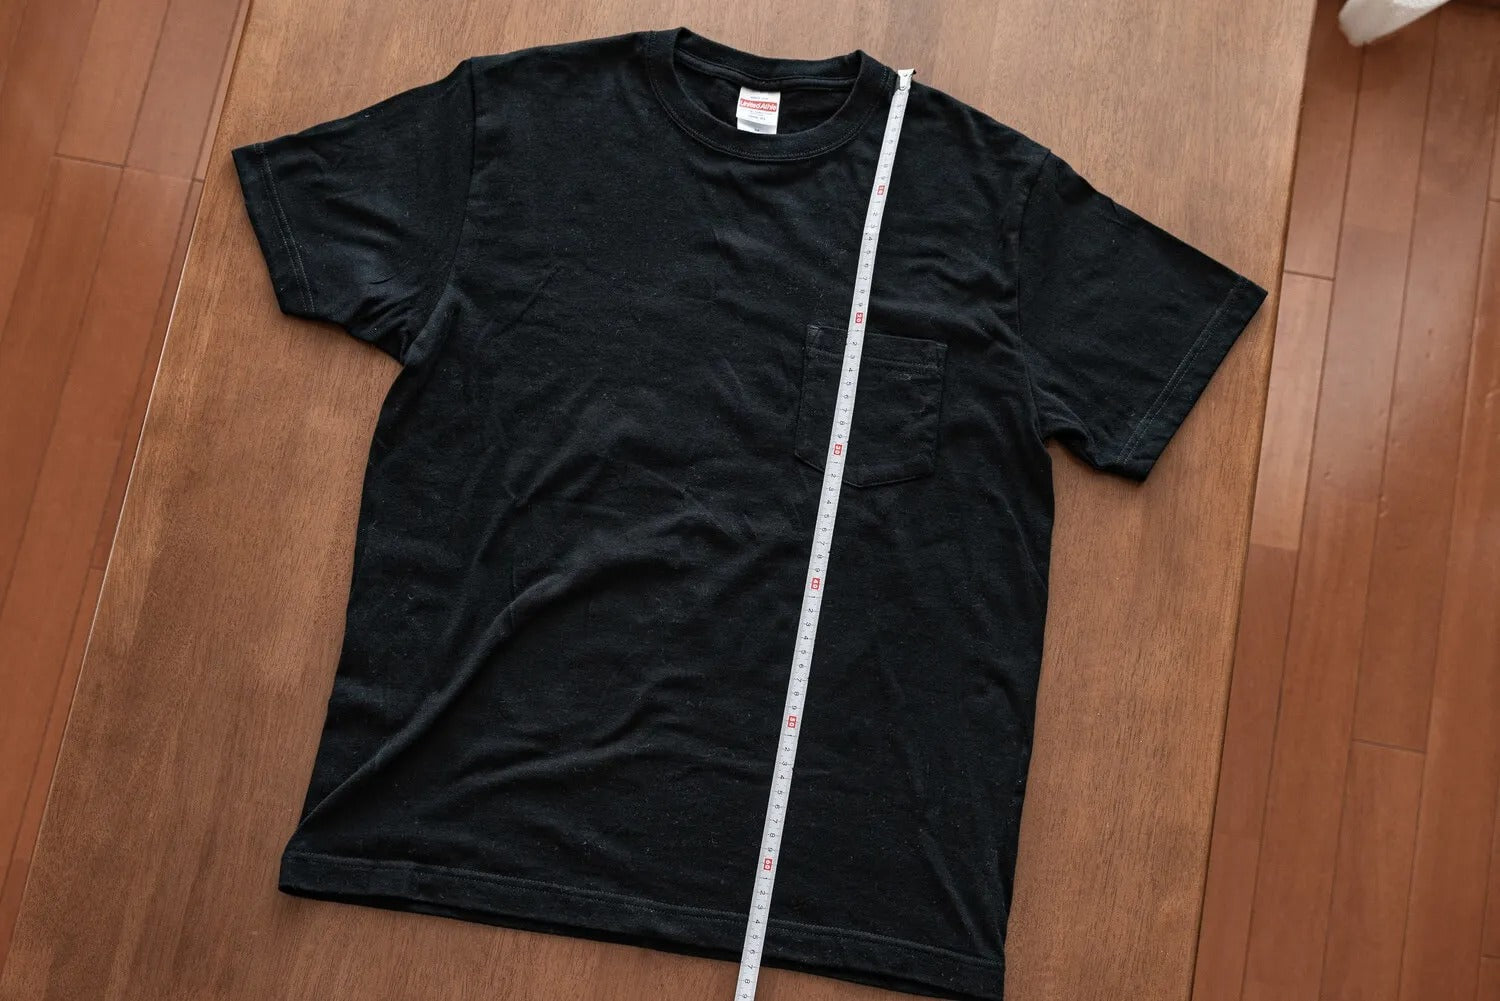 S・M・Lだけじゃない。“自分の適正サイズ”を知れば、インターネットでも服を買える！ -Tshirt.st- – Tshirt.stビジネス